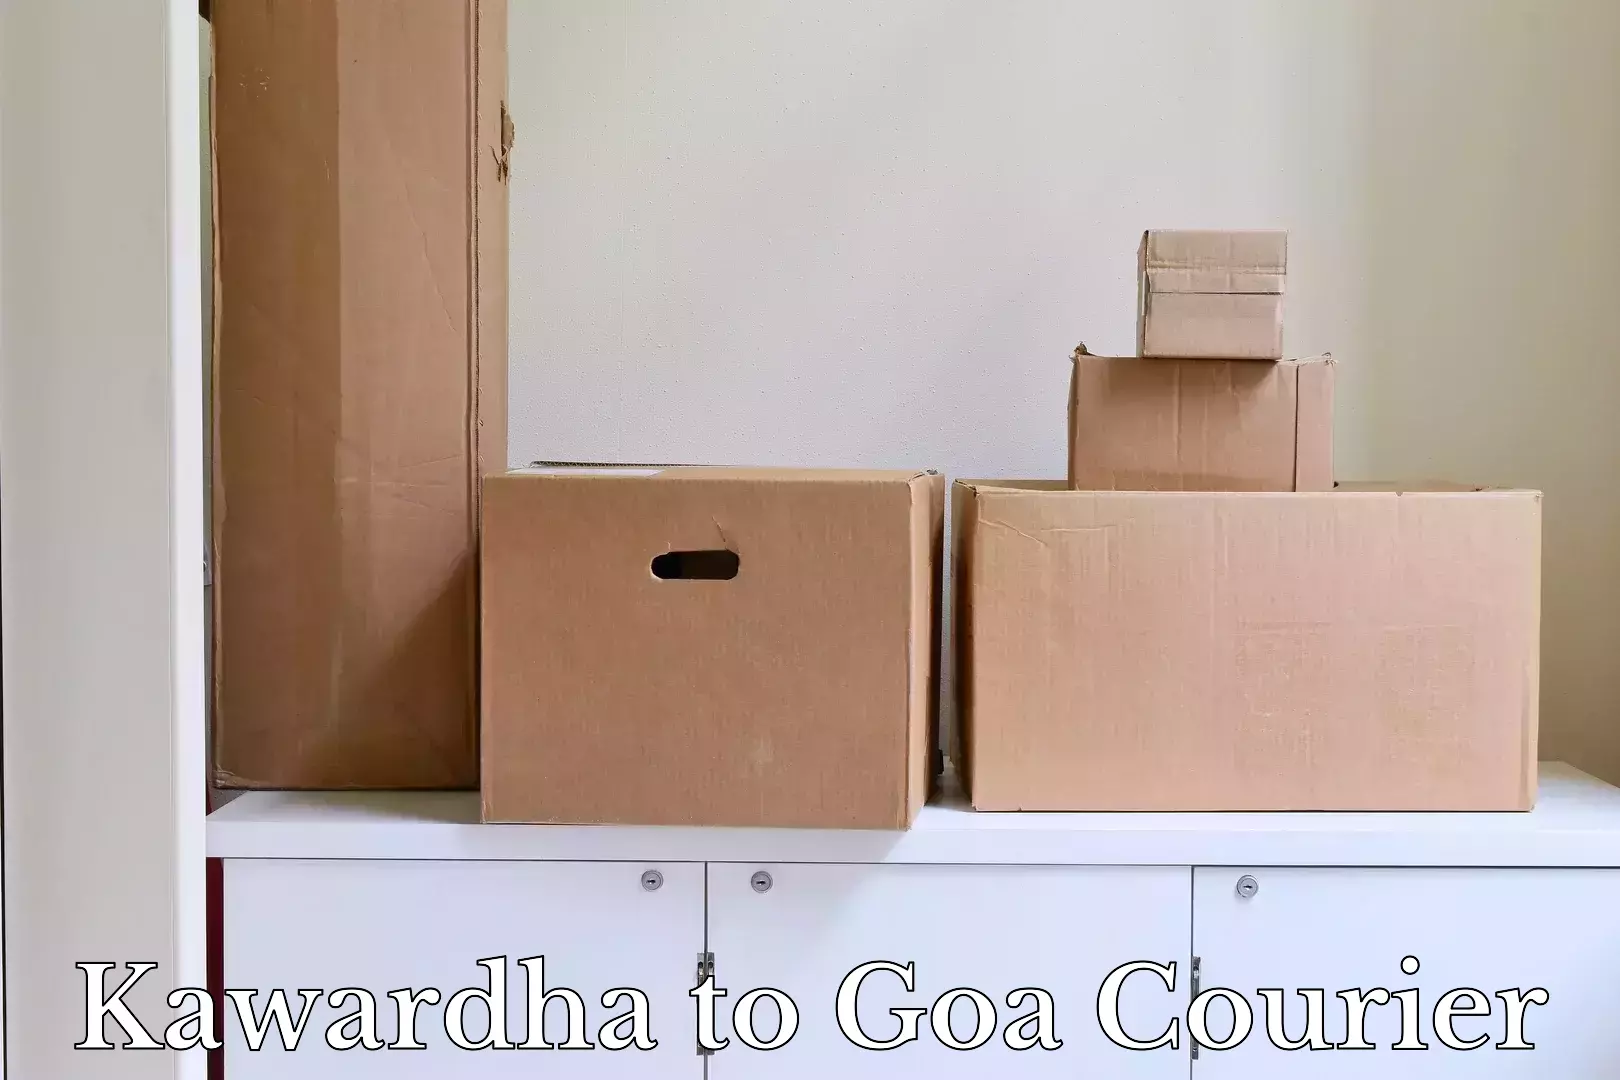 Luggage delivery network Kawardha to Panaji